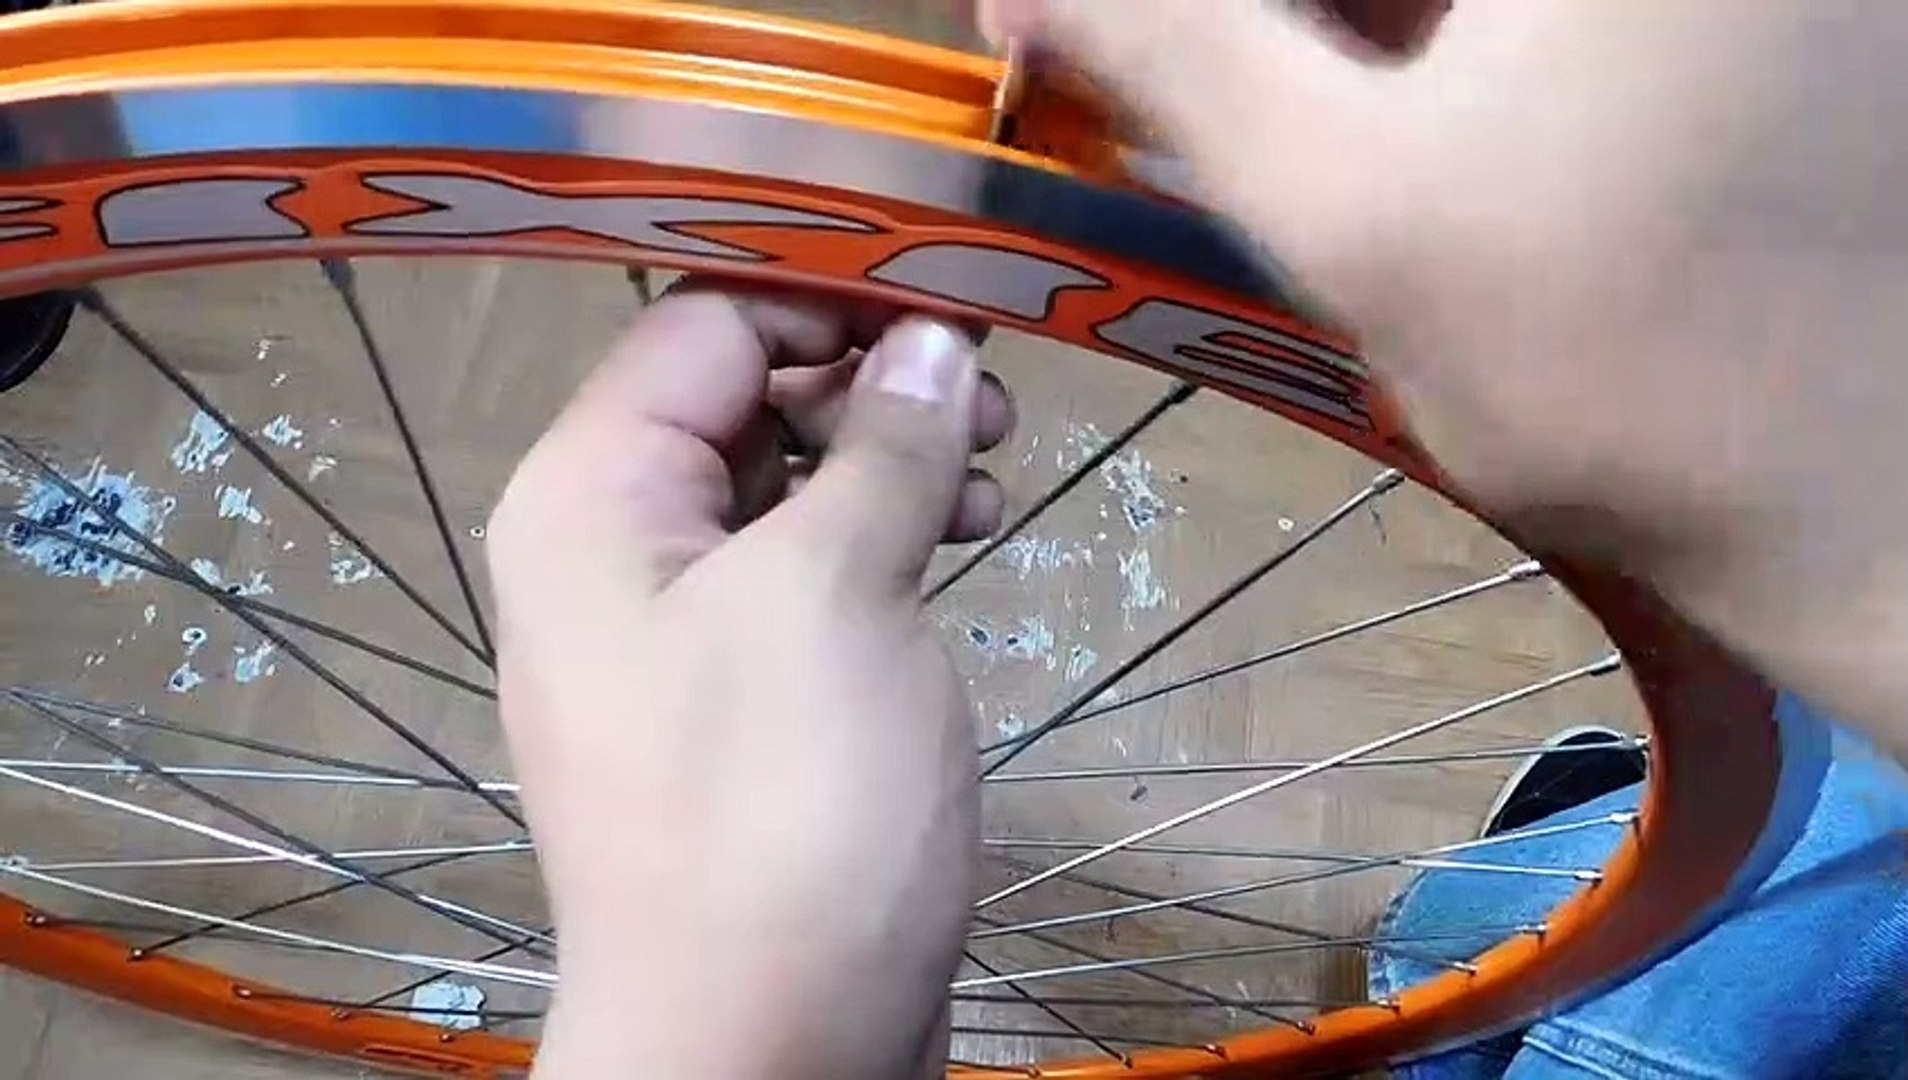 Como centrar un rin de bicicleta | armando bicicleta desde cero #2 - Vídeo  Dailymotion